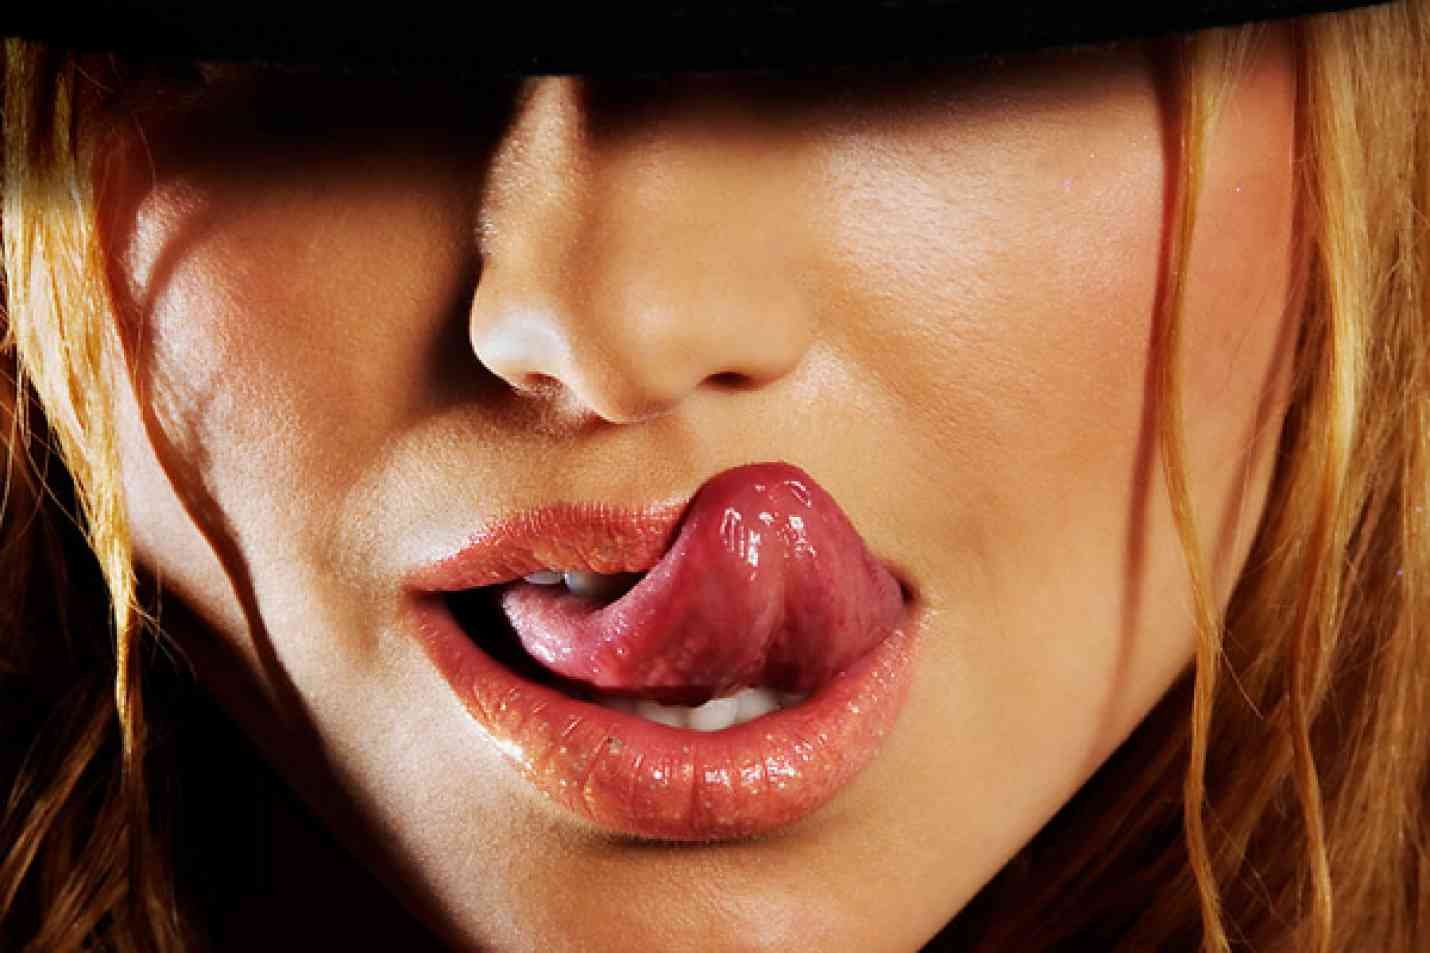 Бабам врот. Женские губы. Красивые женские губы. Девушка облизывается. Соблазнительные губы.